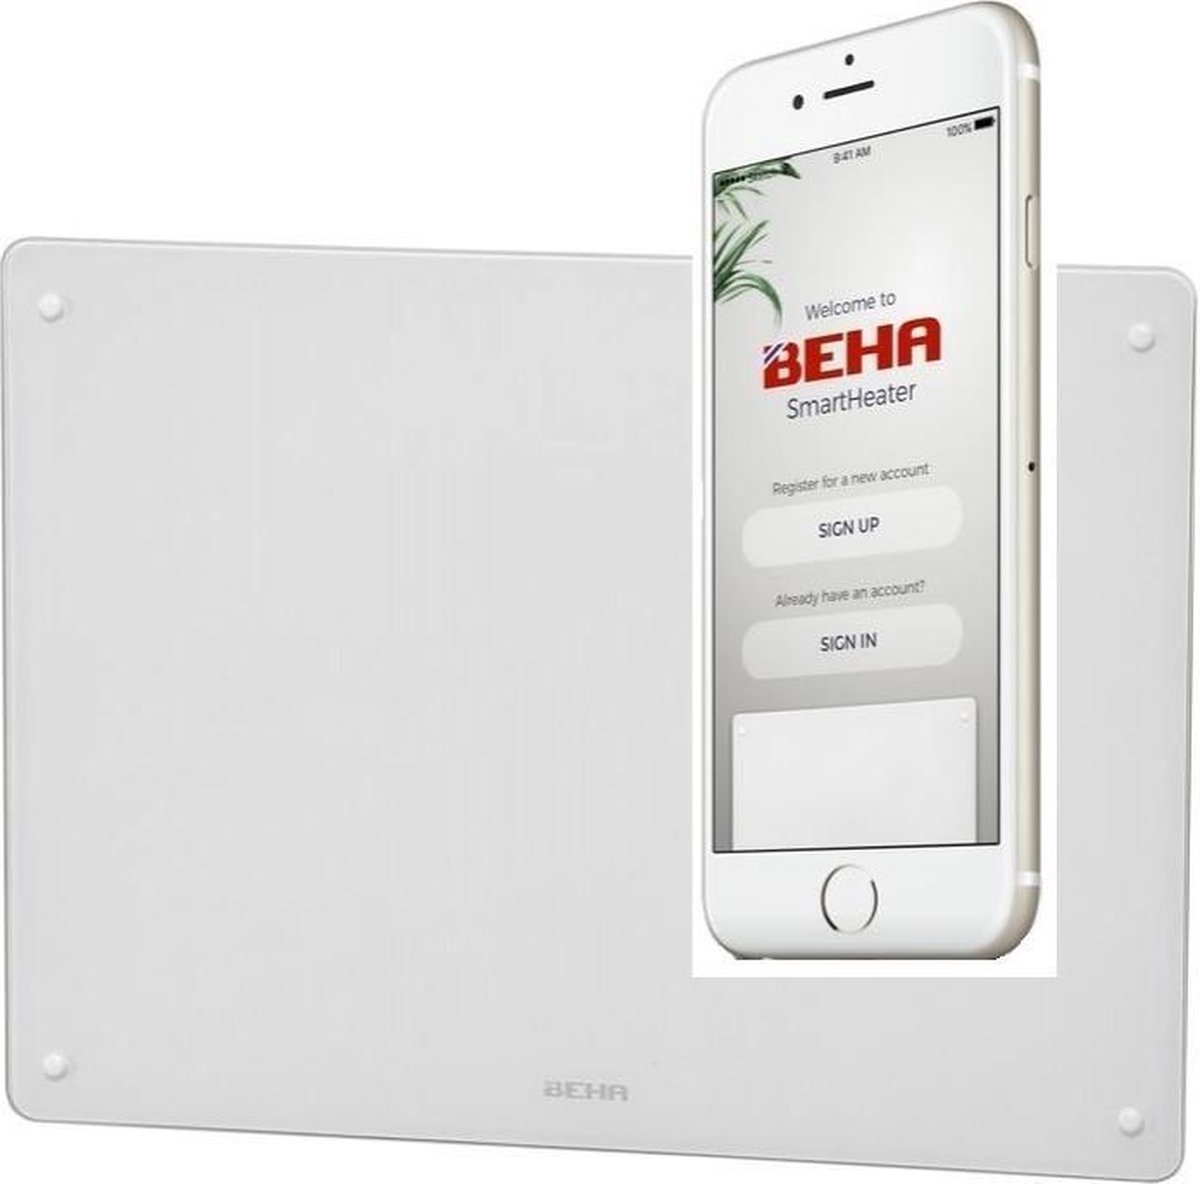 Smart verwarming Beha Glas Wifi 1250 watt HxWxD: 42 x 94 x 9 cm, woonhuis, Tinyhouse, chalet, verhuur, kantoor, werkruimte, behandelruimte